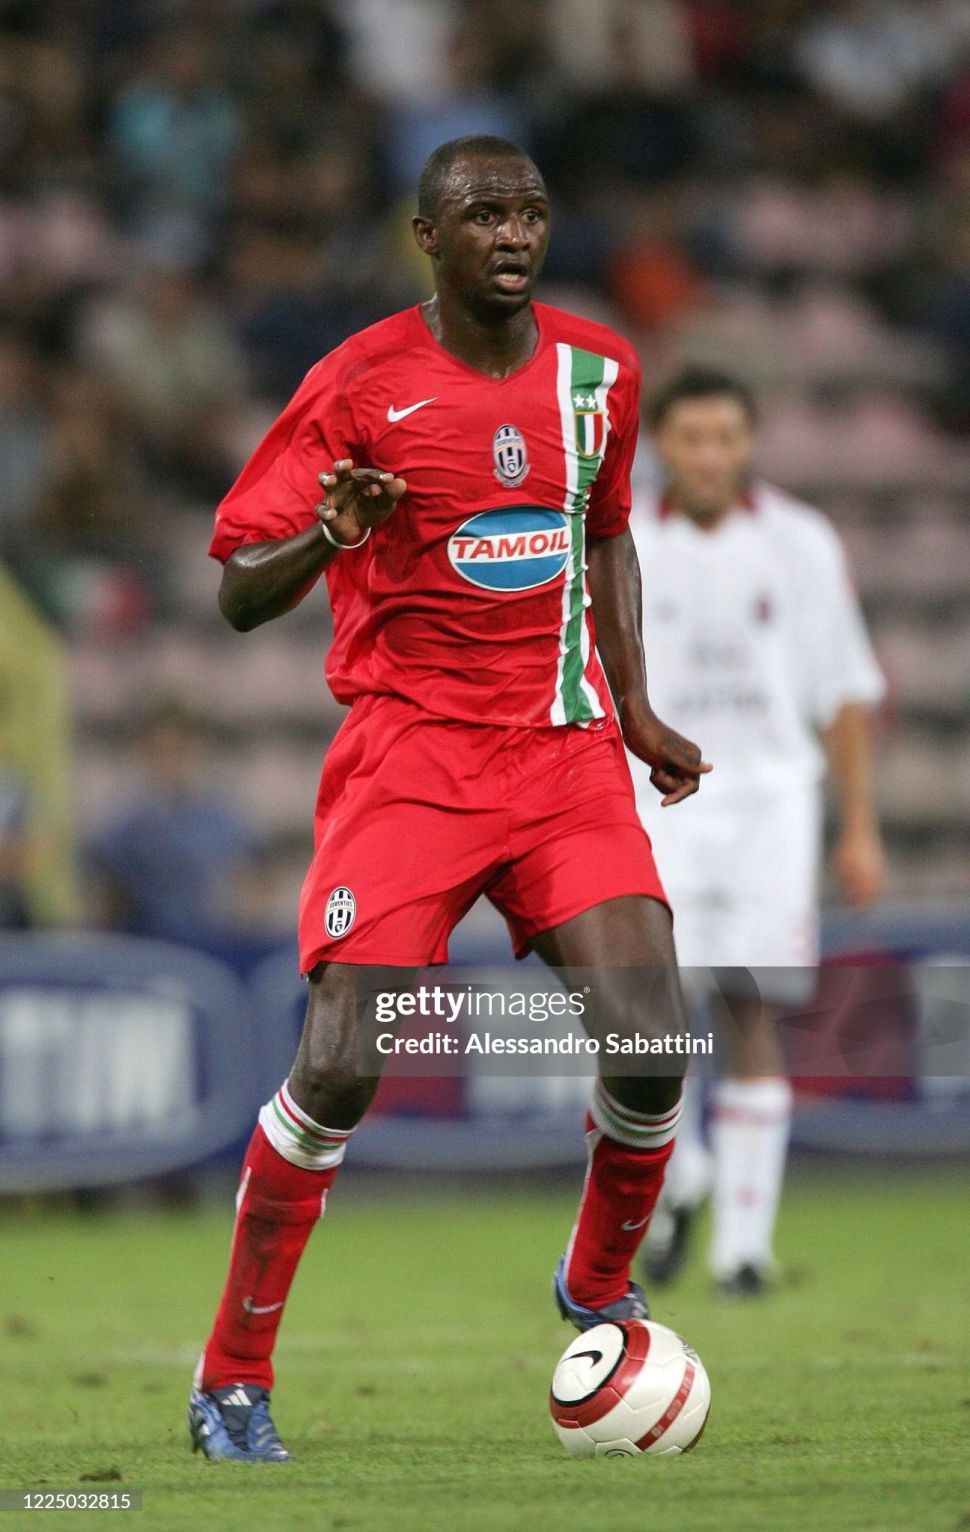 Tượng Vieira 4 Juventus 2005-2007 third corinthian Select 500 PRO1444